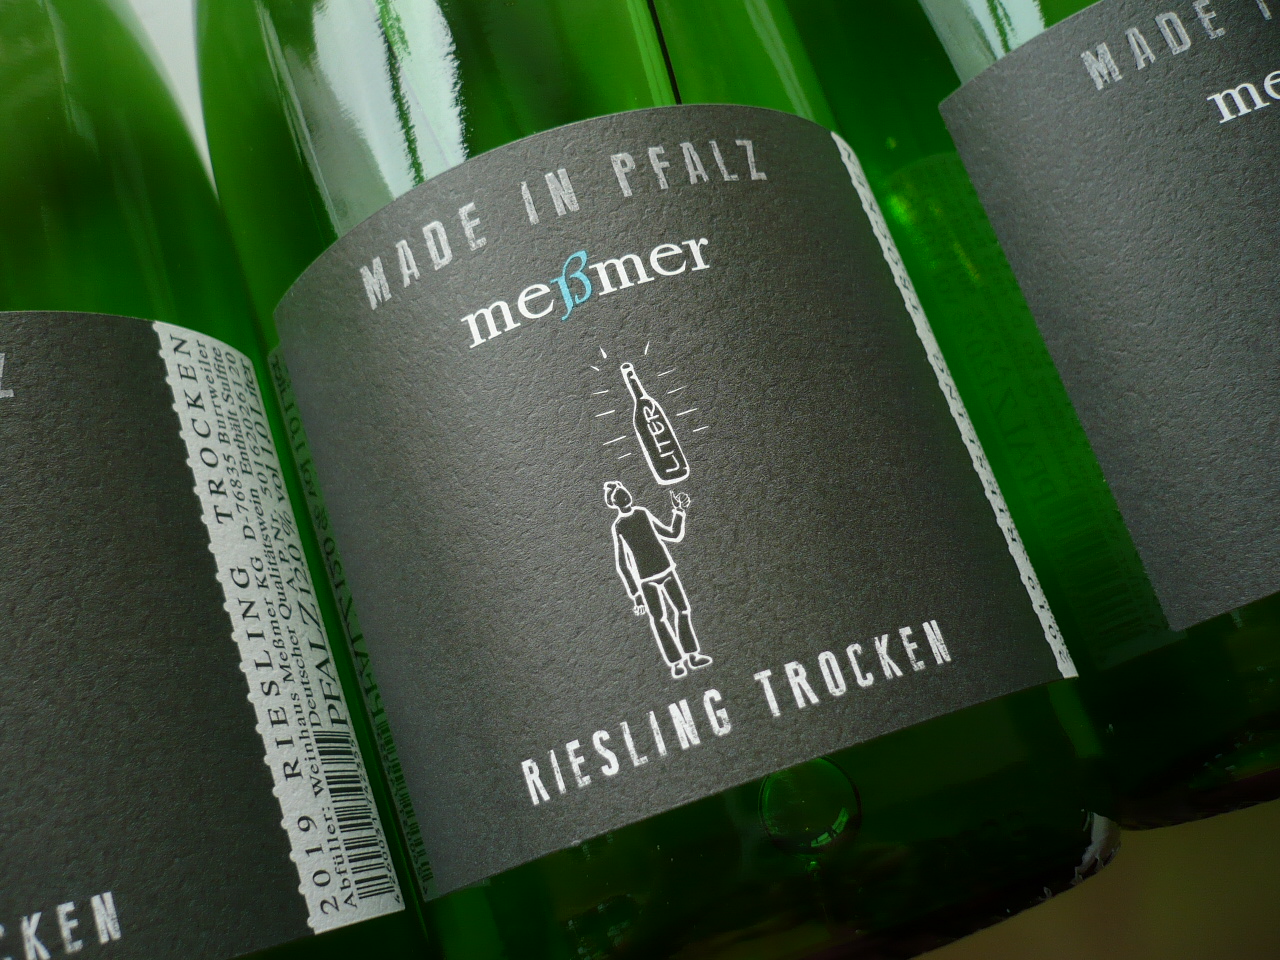 Qba trocken,Weinhaus 2022er Pfalz -Liter- im RIESLING Meßmer, – Weinhandel Fedelhören